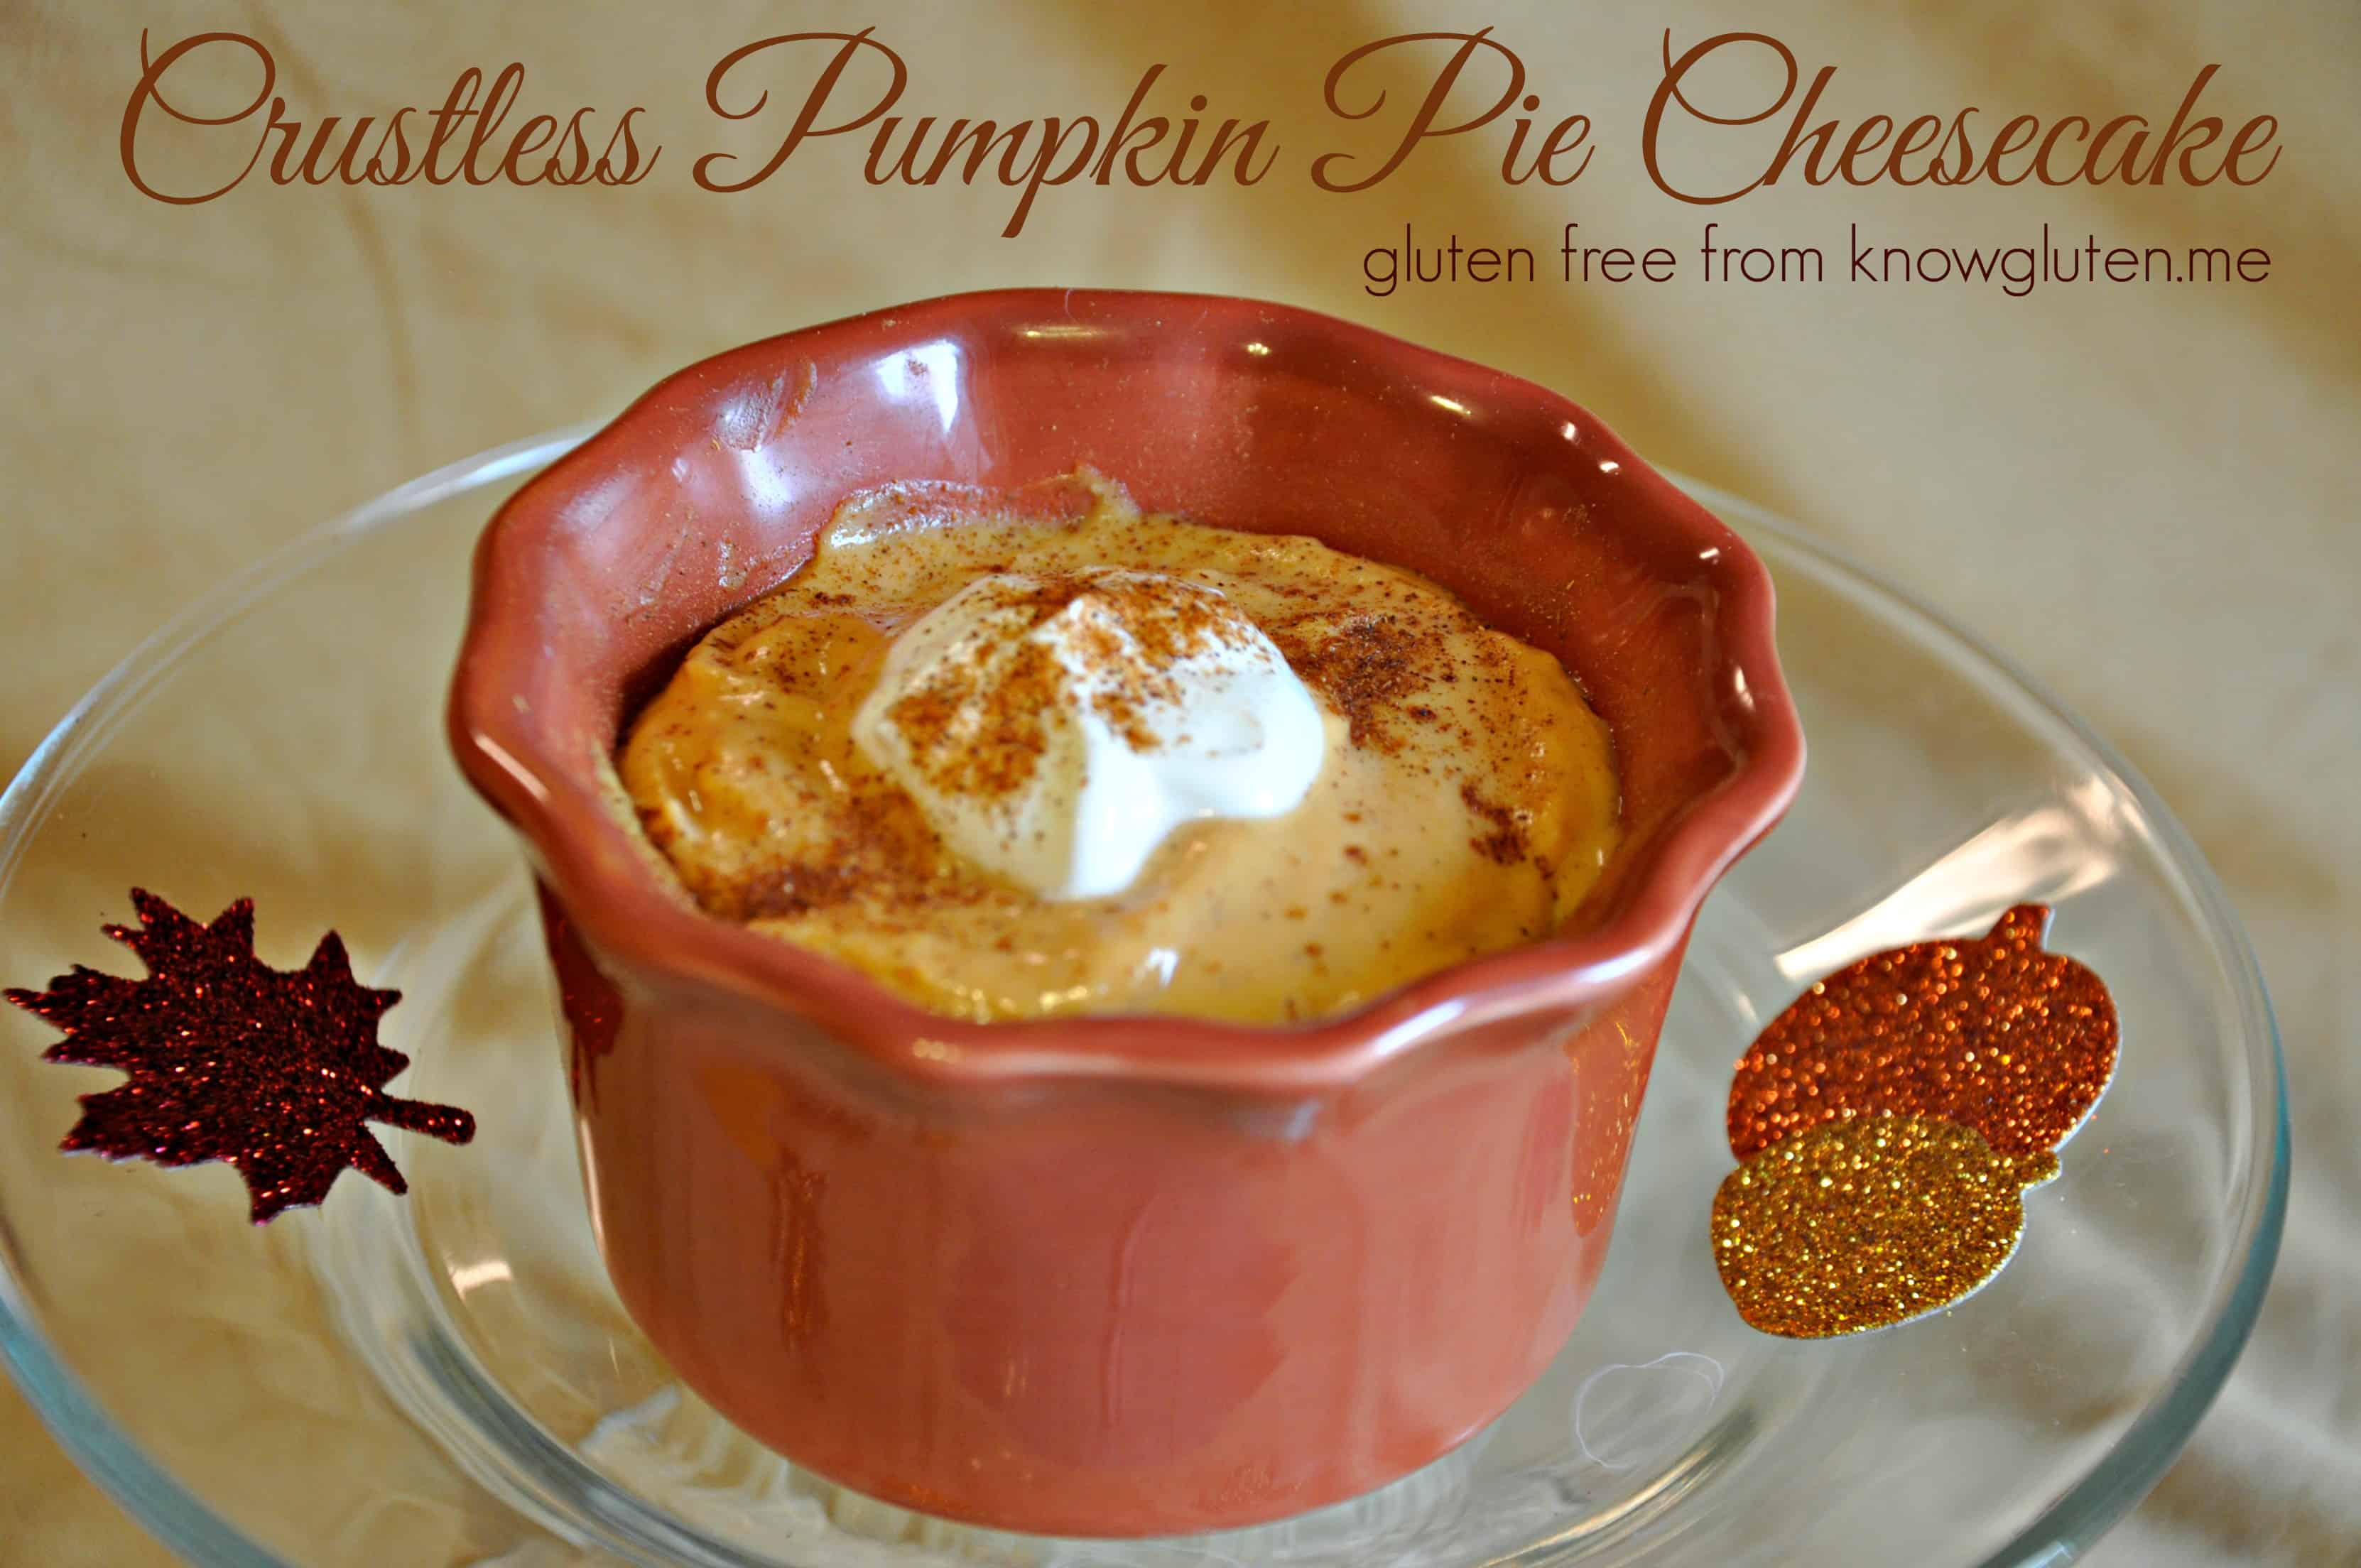 Crustless Pumpkin Pie Cheesecake from knowgluten.me - A simple, yet elegant gluten free dessert for Thanksgiving